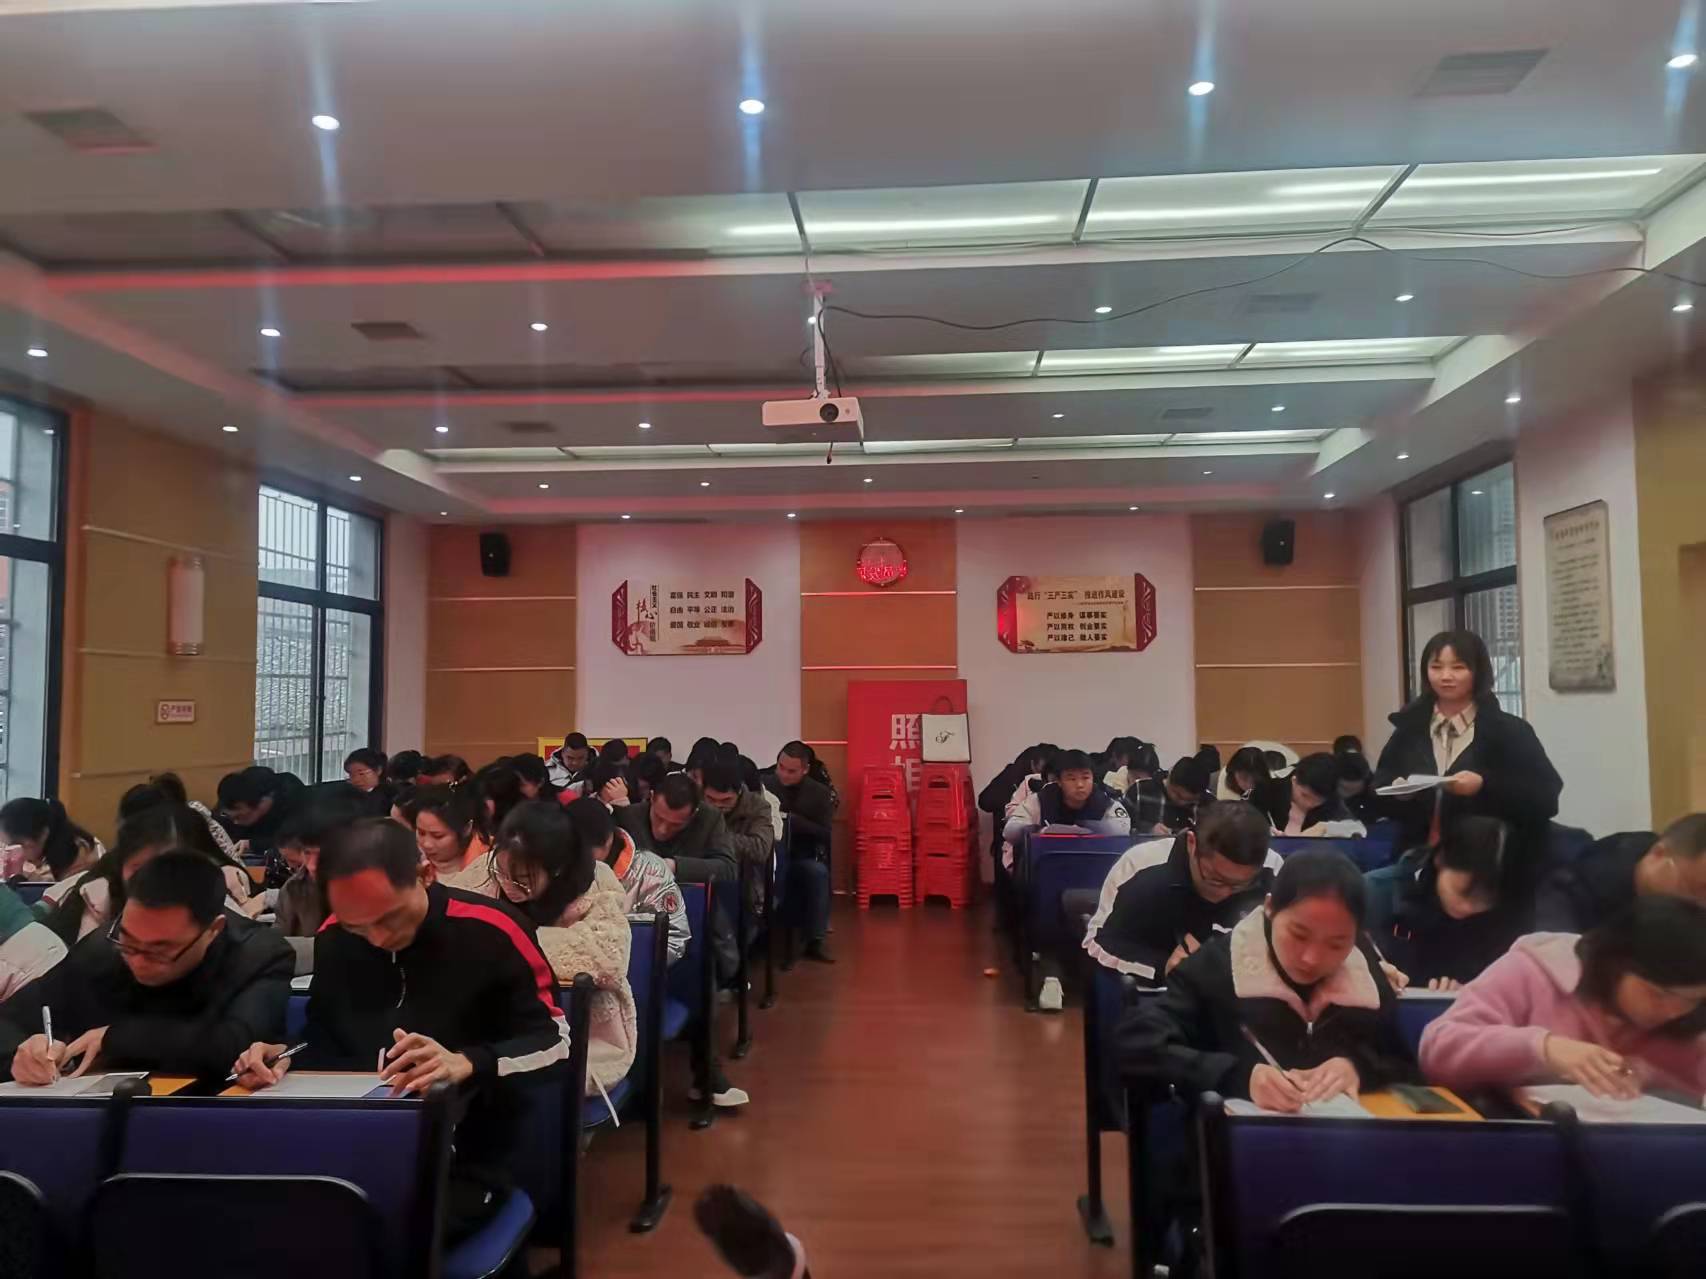 2021年第四季度邵阳县教育系统党员发展对象面试考察如期开展